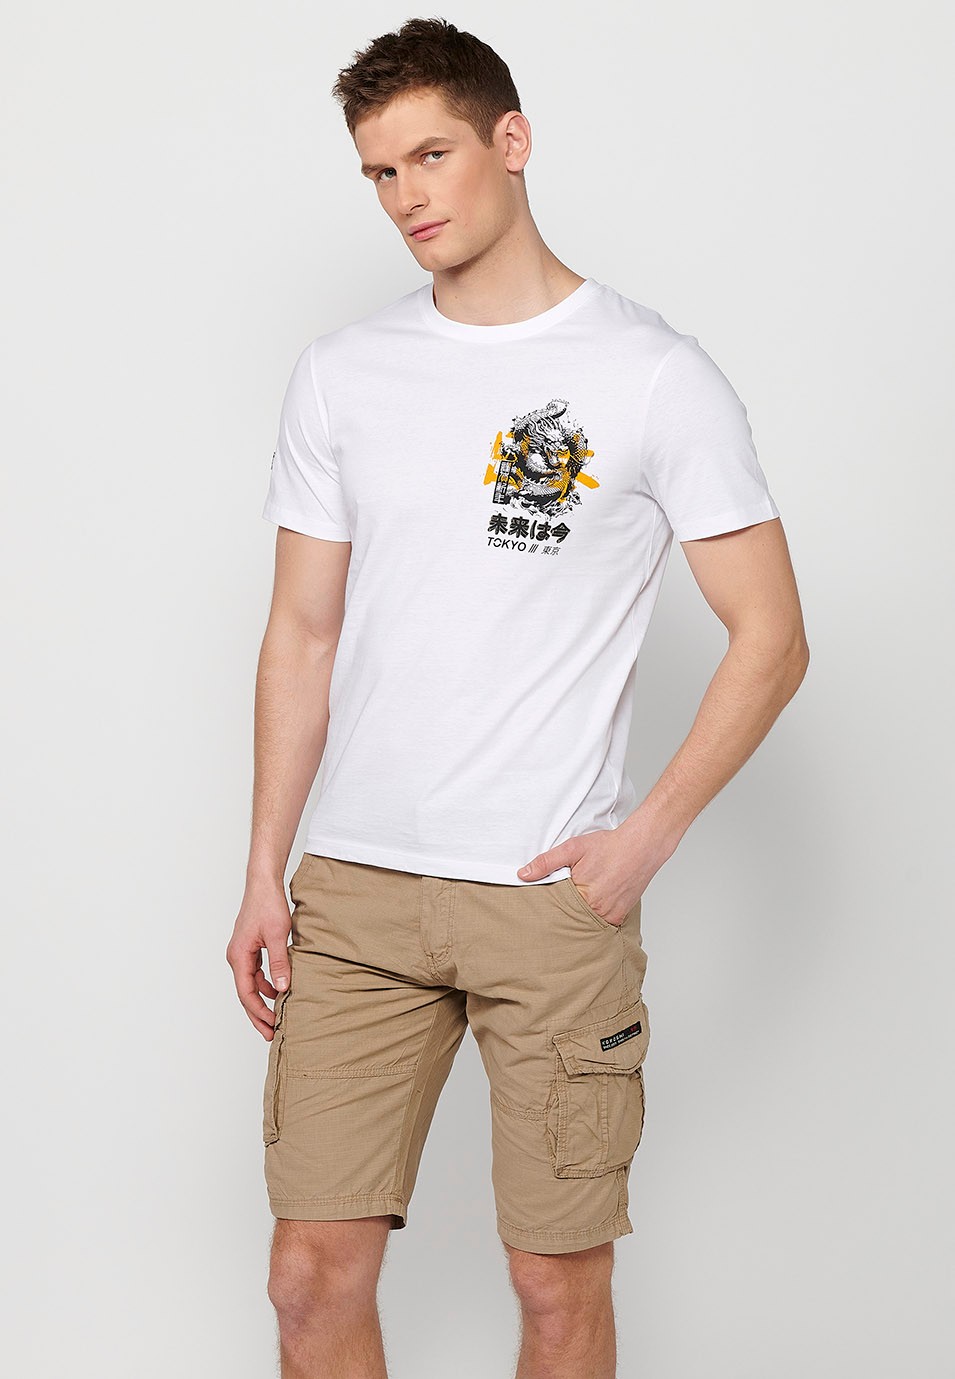 Camiseta de manga corta de algodon, estampada en la espalda, color blanco para hombre